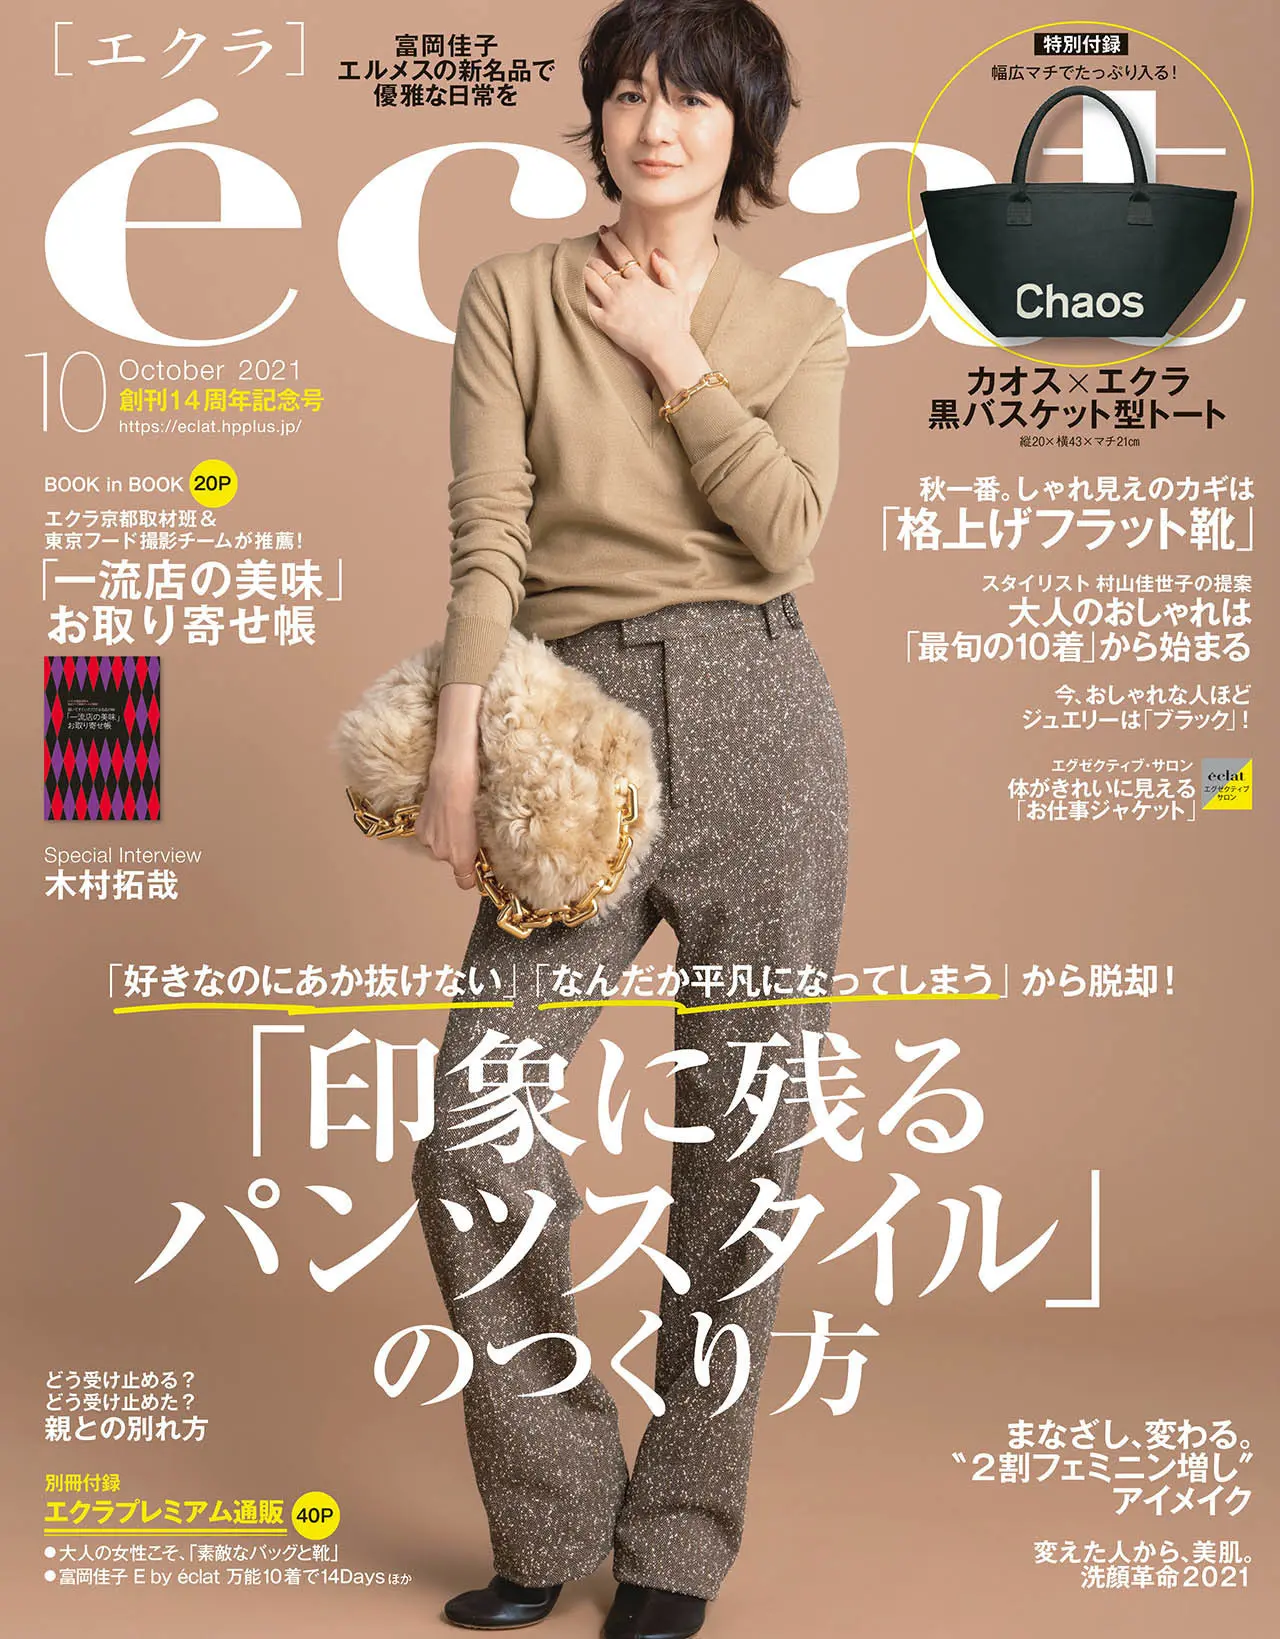 エクラ10月号表紙。カバーモデルは富岡佳子さん。